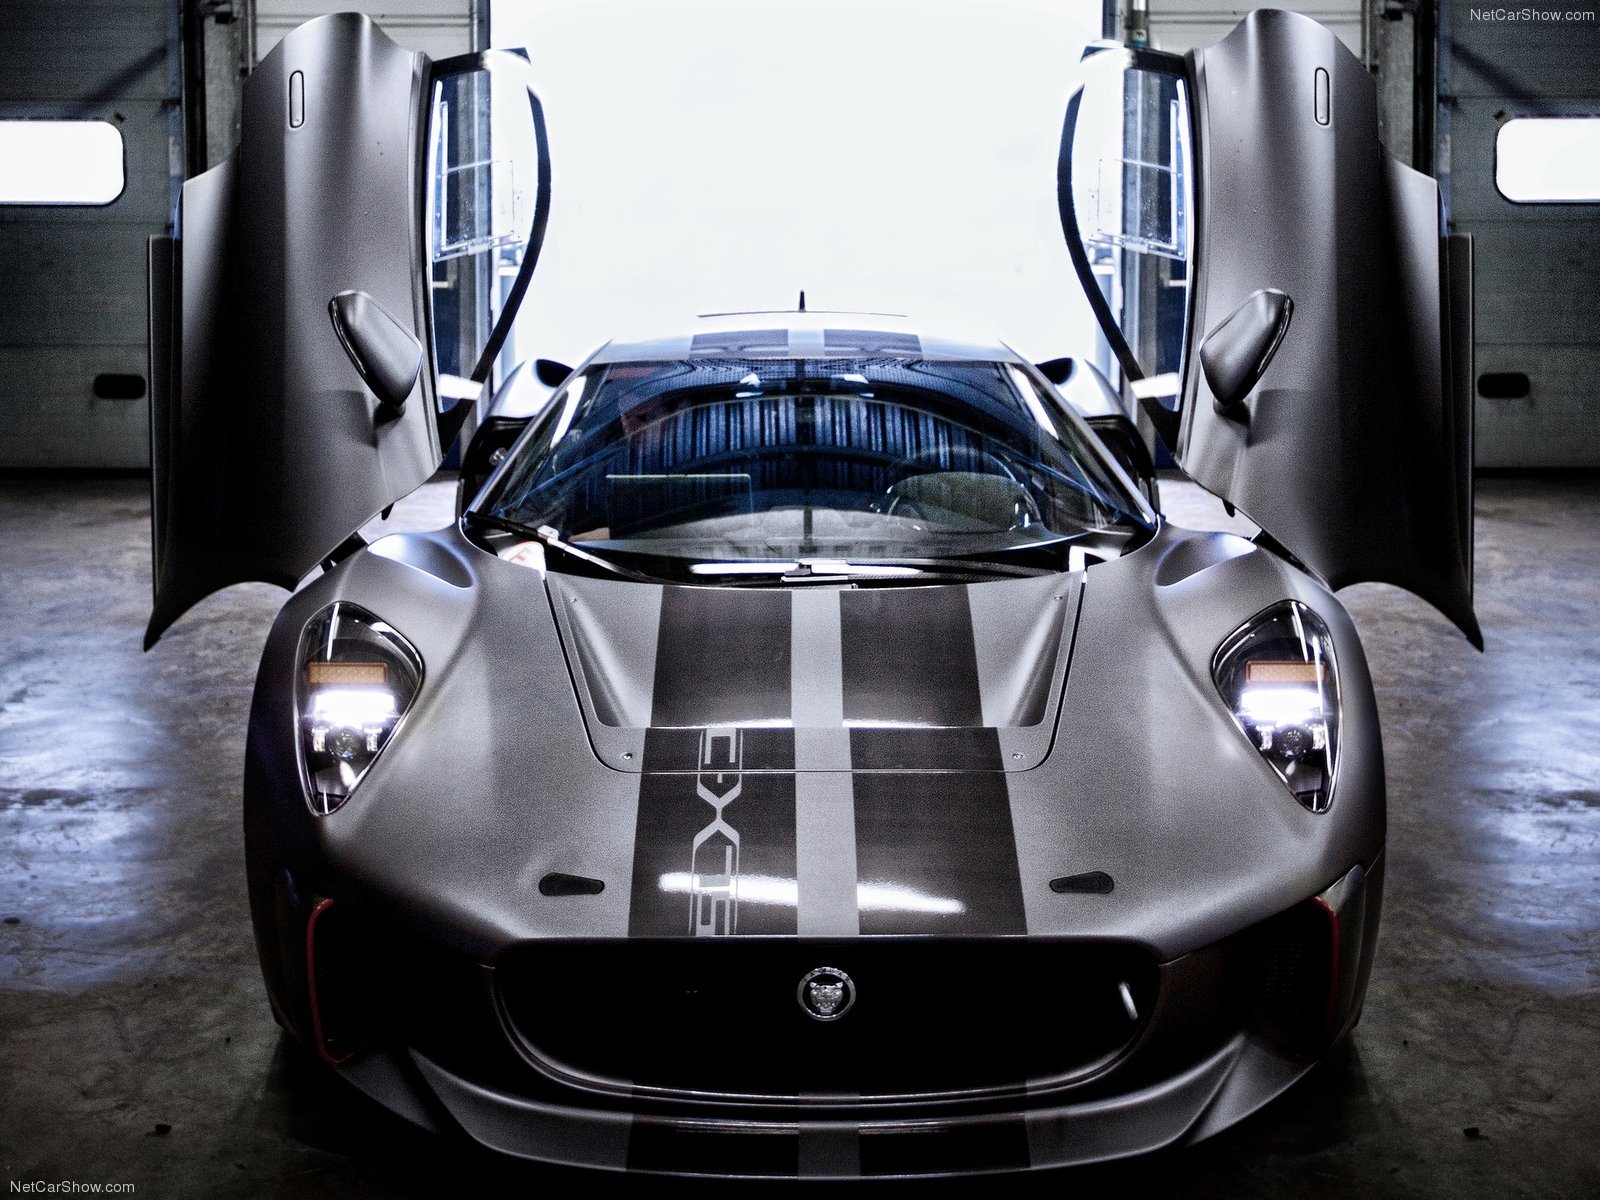 2013, C x75, Cars, Concept, Jaguar, Supercars Wallpaper